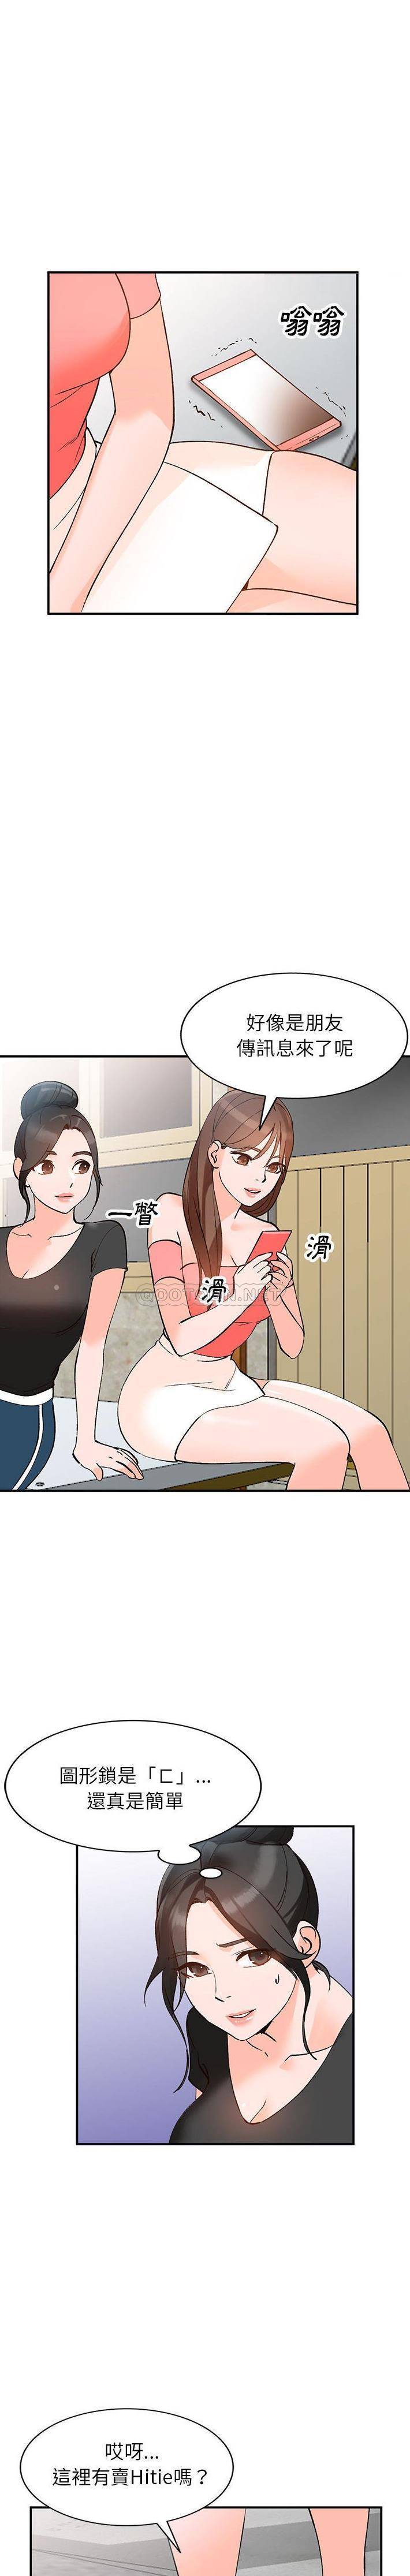 韩国污漫画 她們的小秘密(小鎮上的女人們) 第11话 20